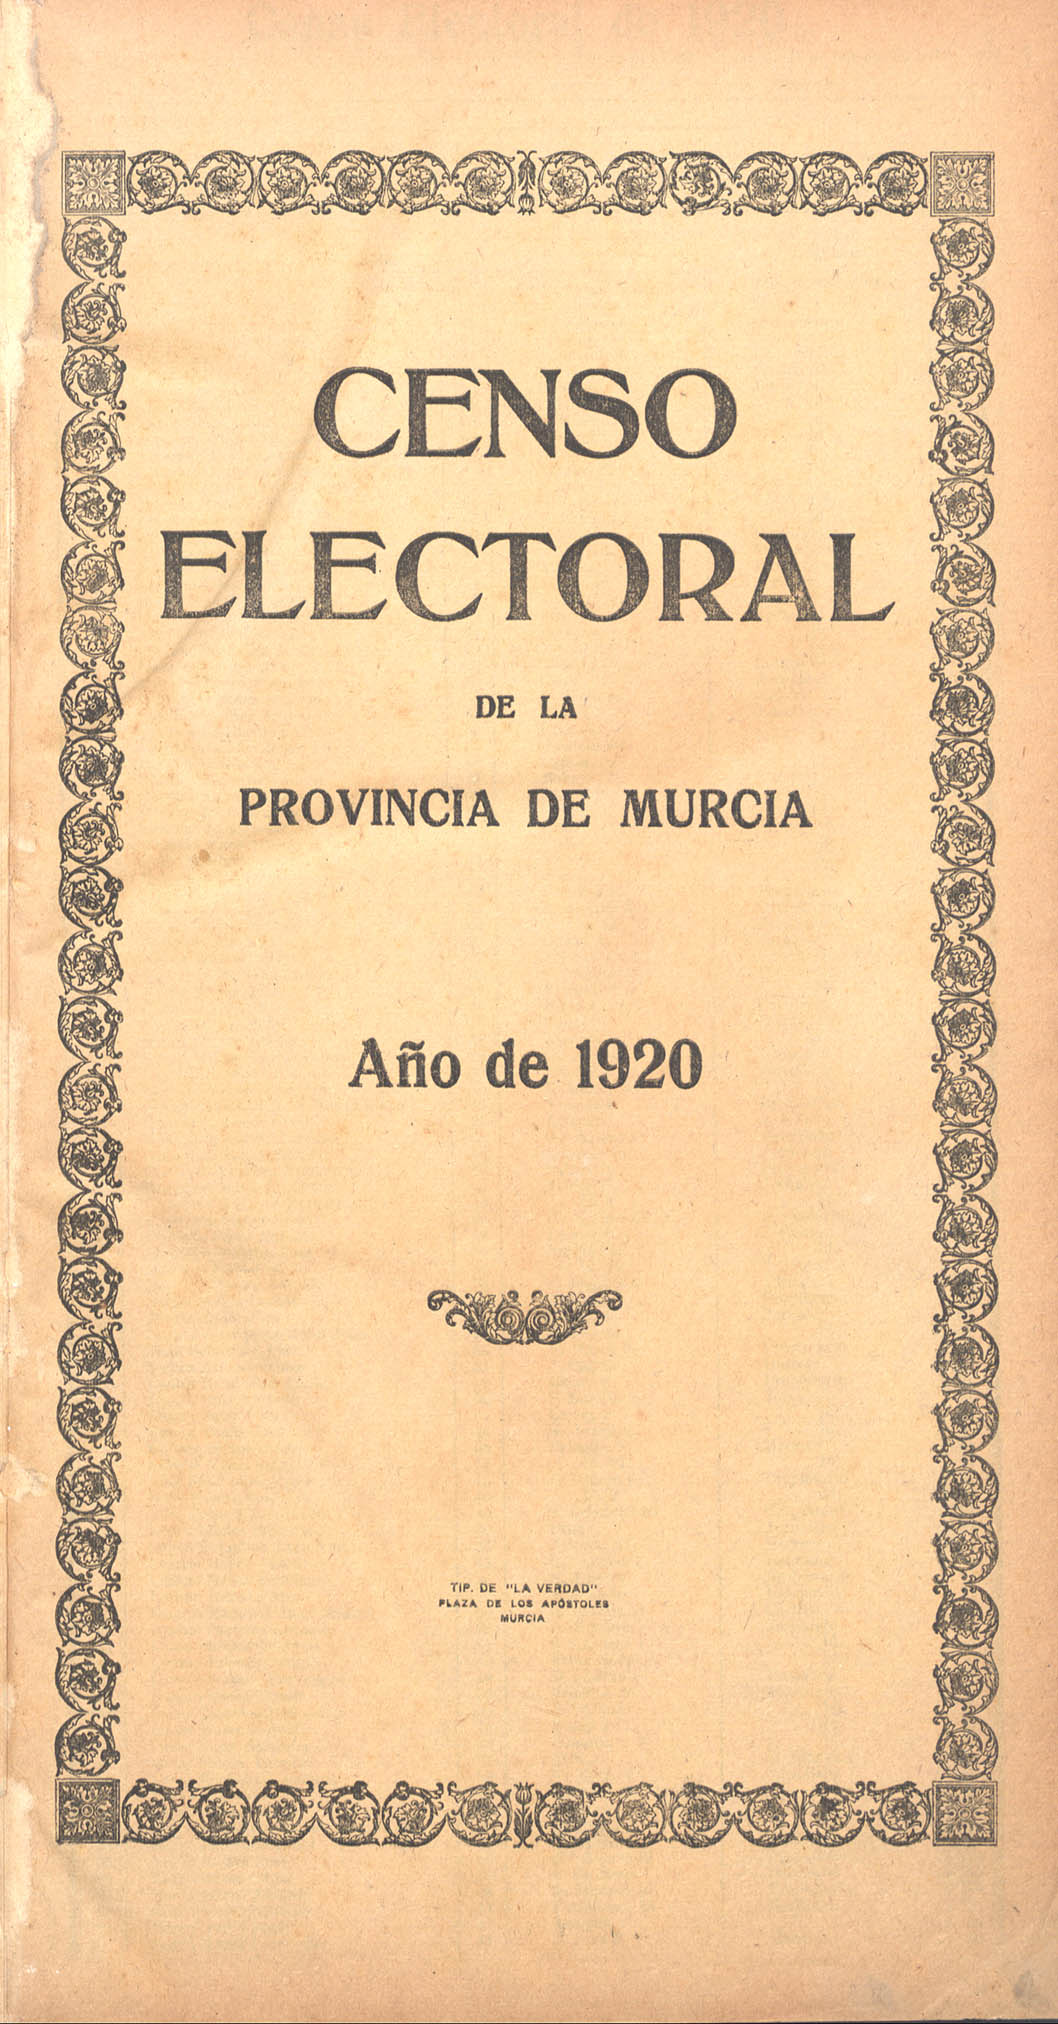 Censo electoral provincial de 1920